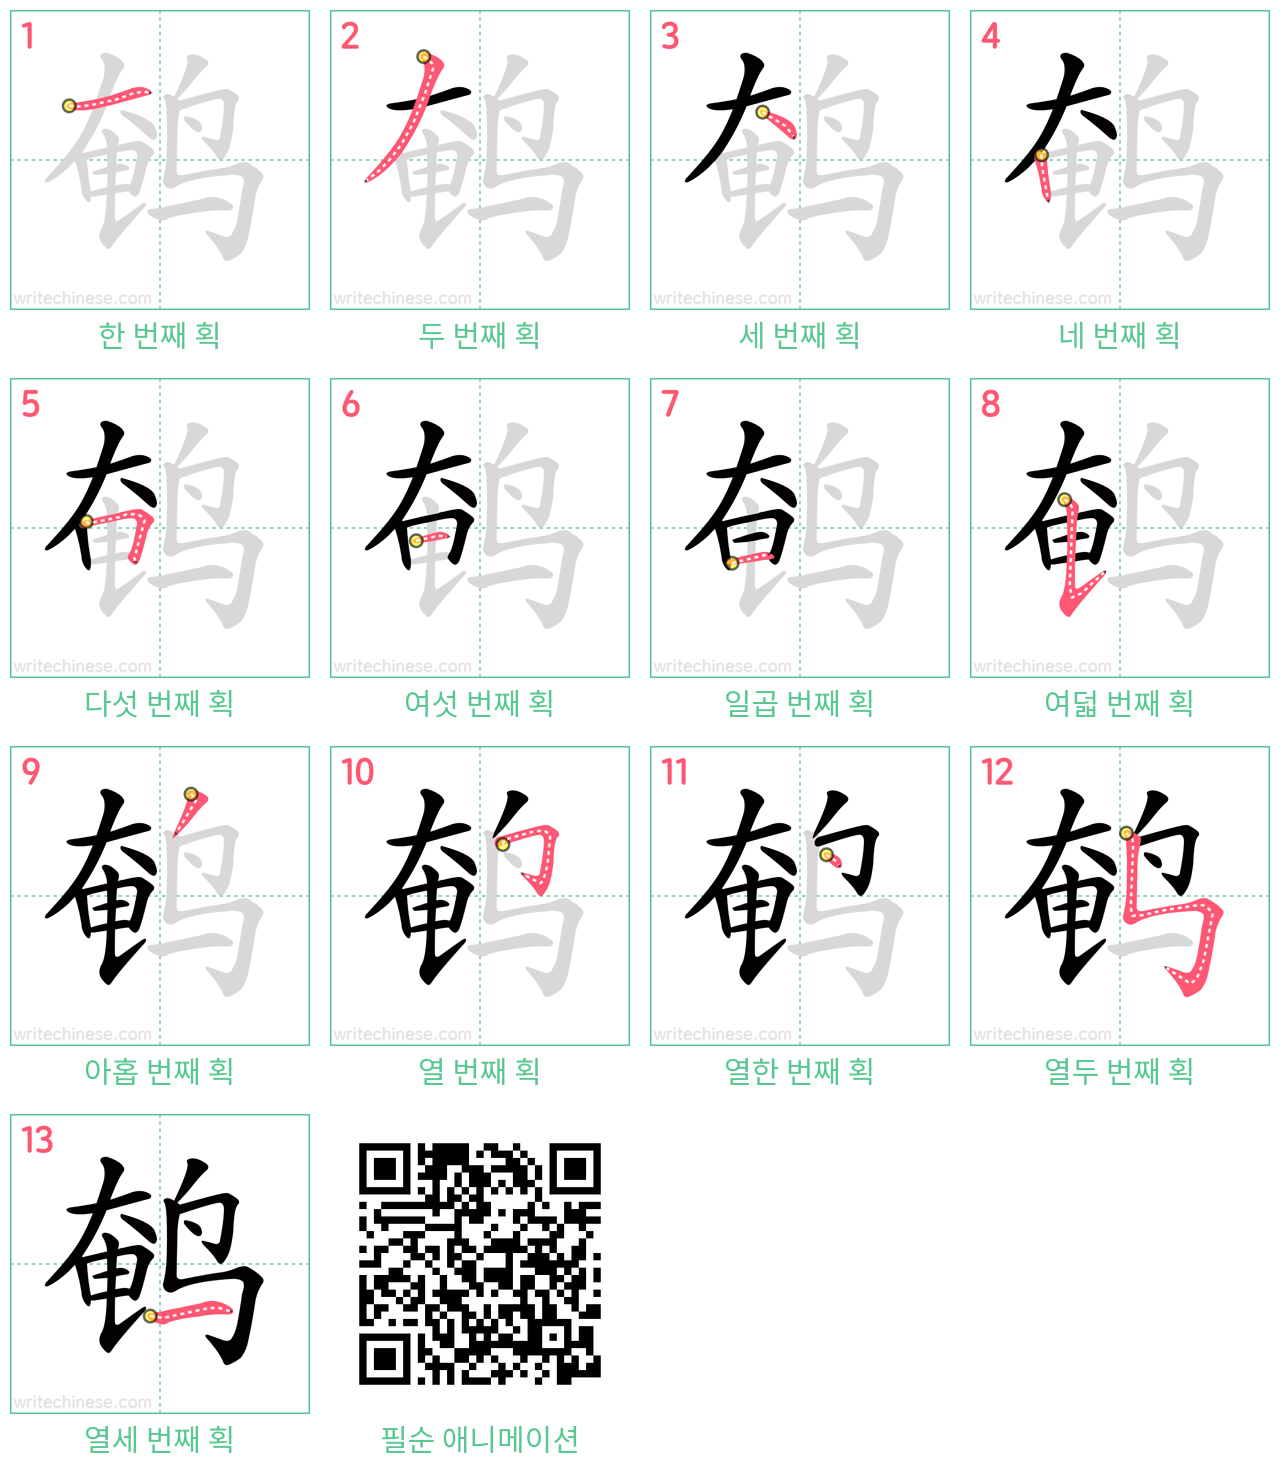 鹌 step-by-step stroke order diagrams